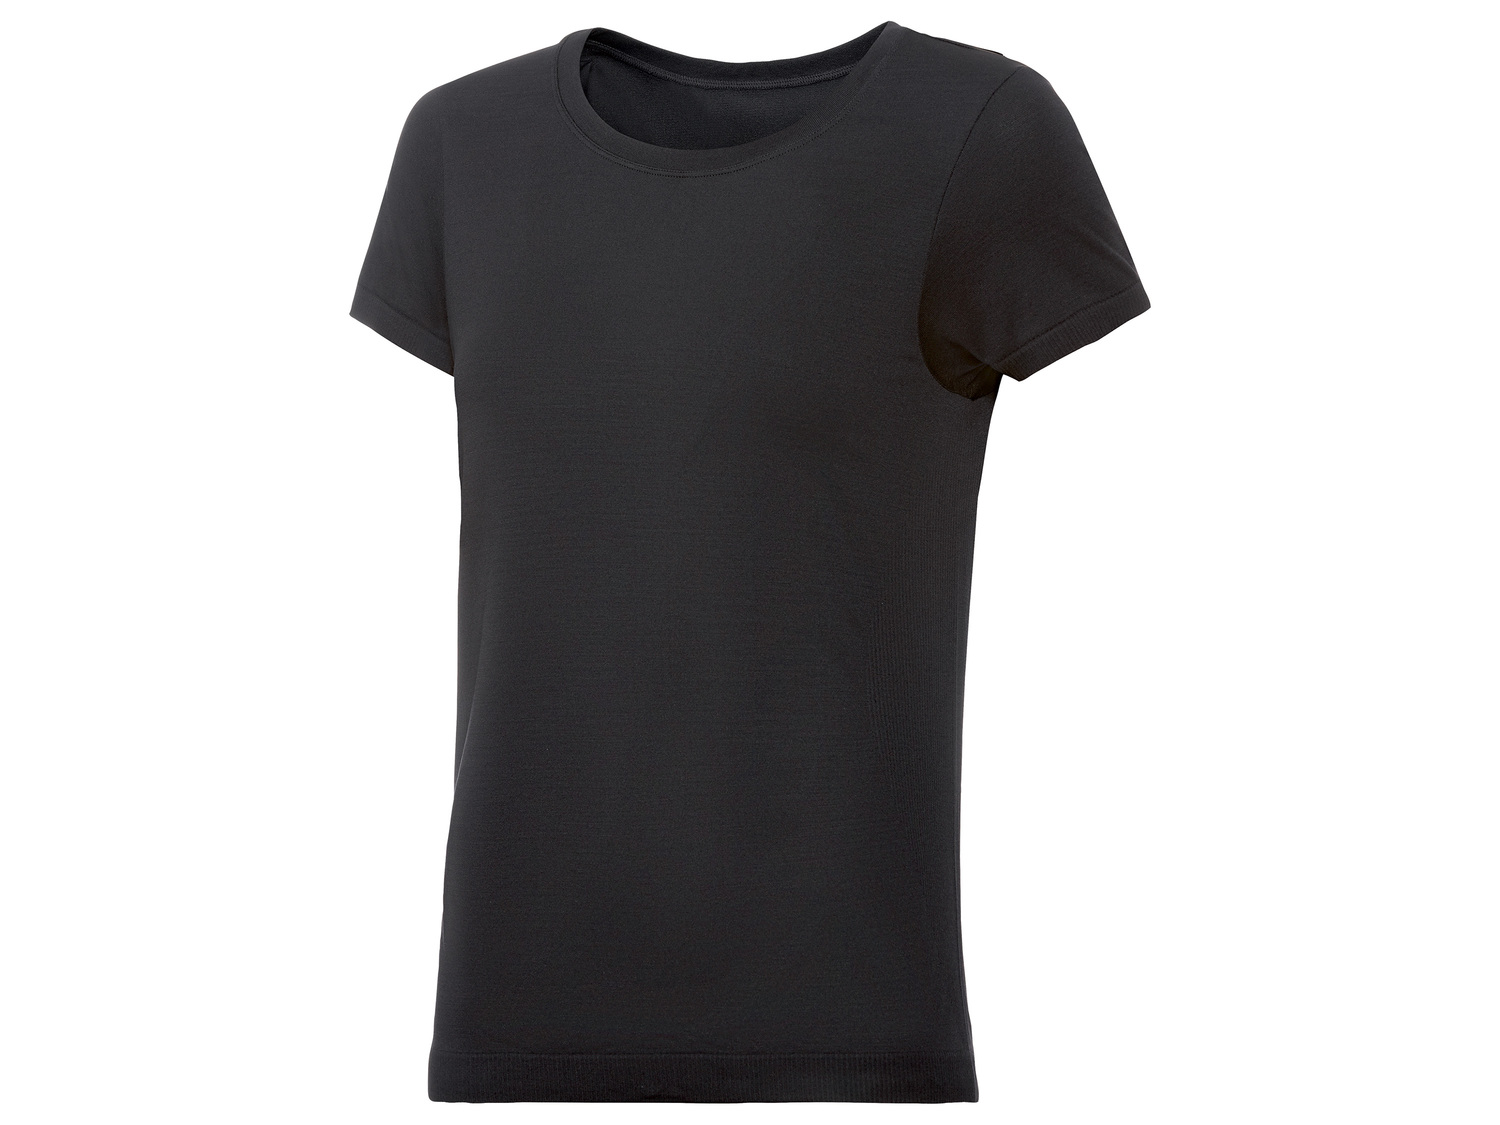 T-shirt technique , le prix 3.99 &#8364; 
- Du S au L selon mod&egrave;le.
- ...